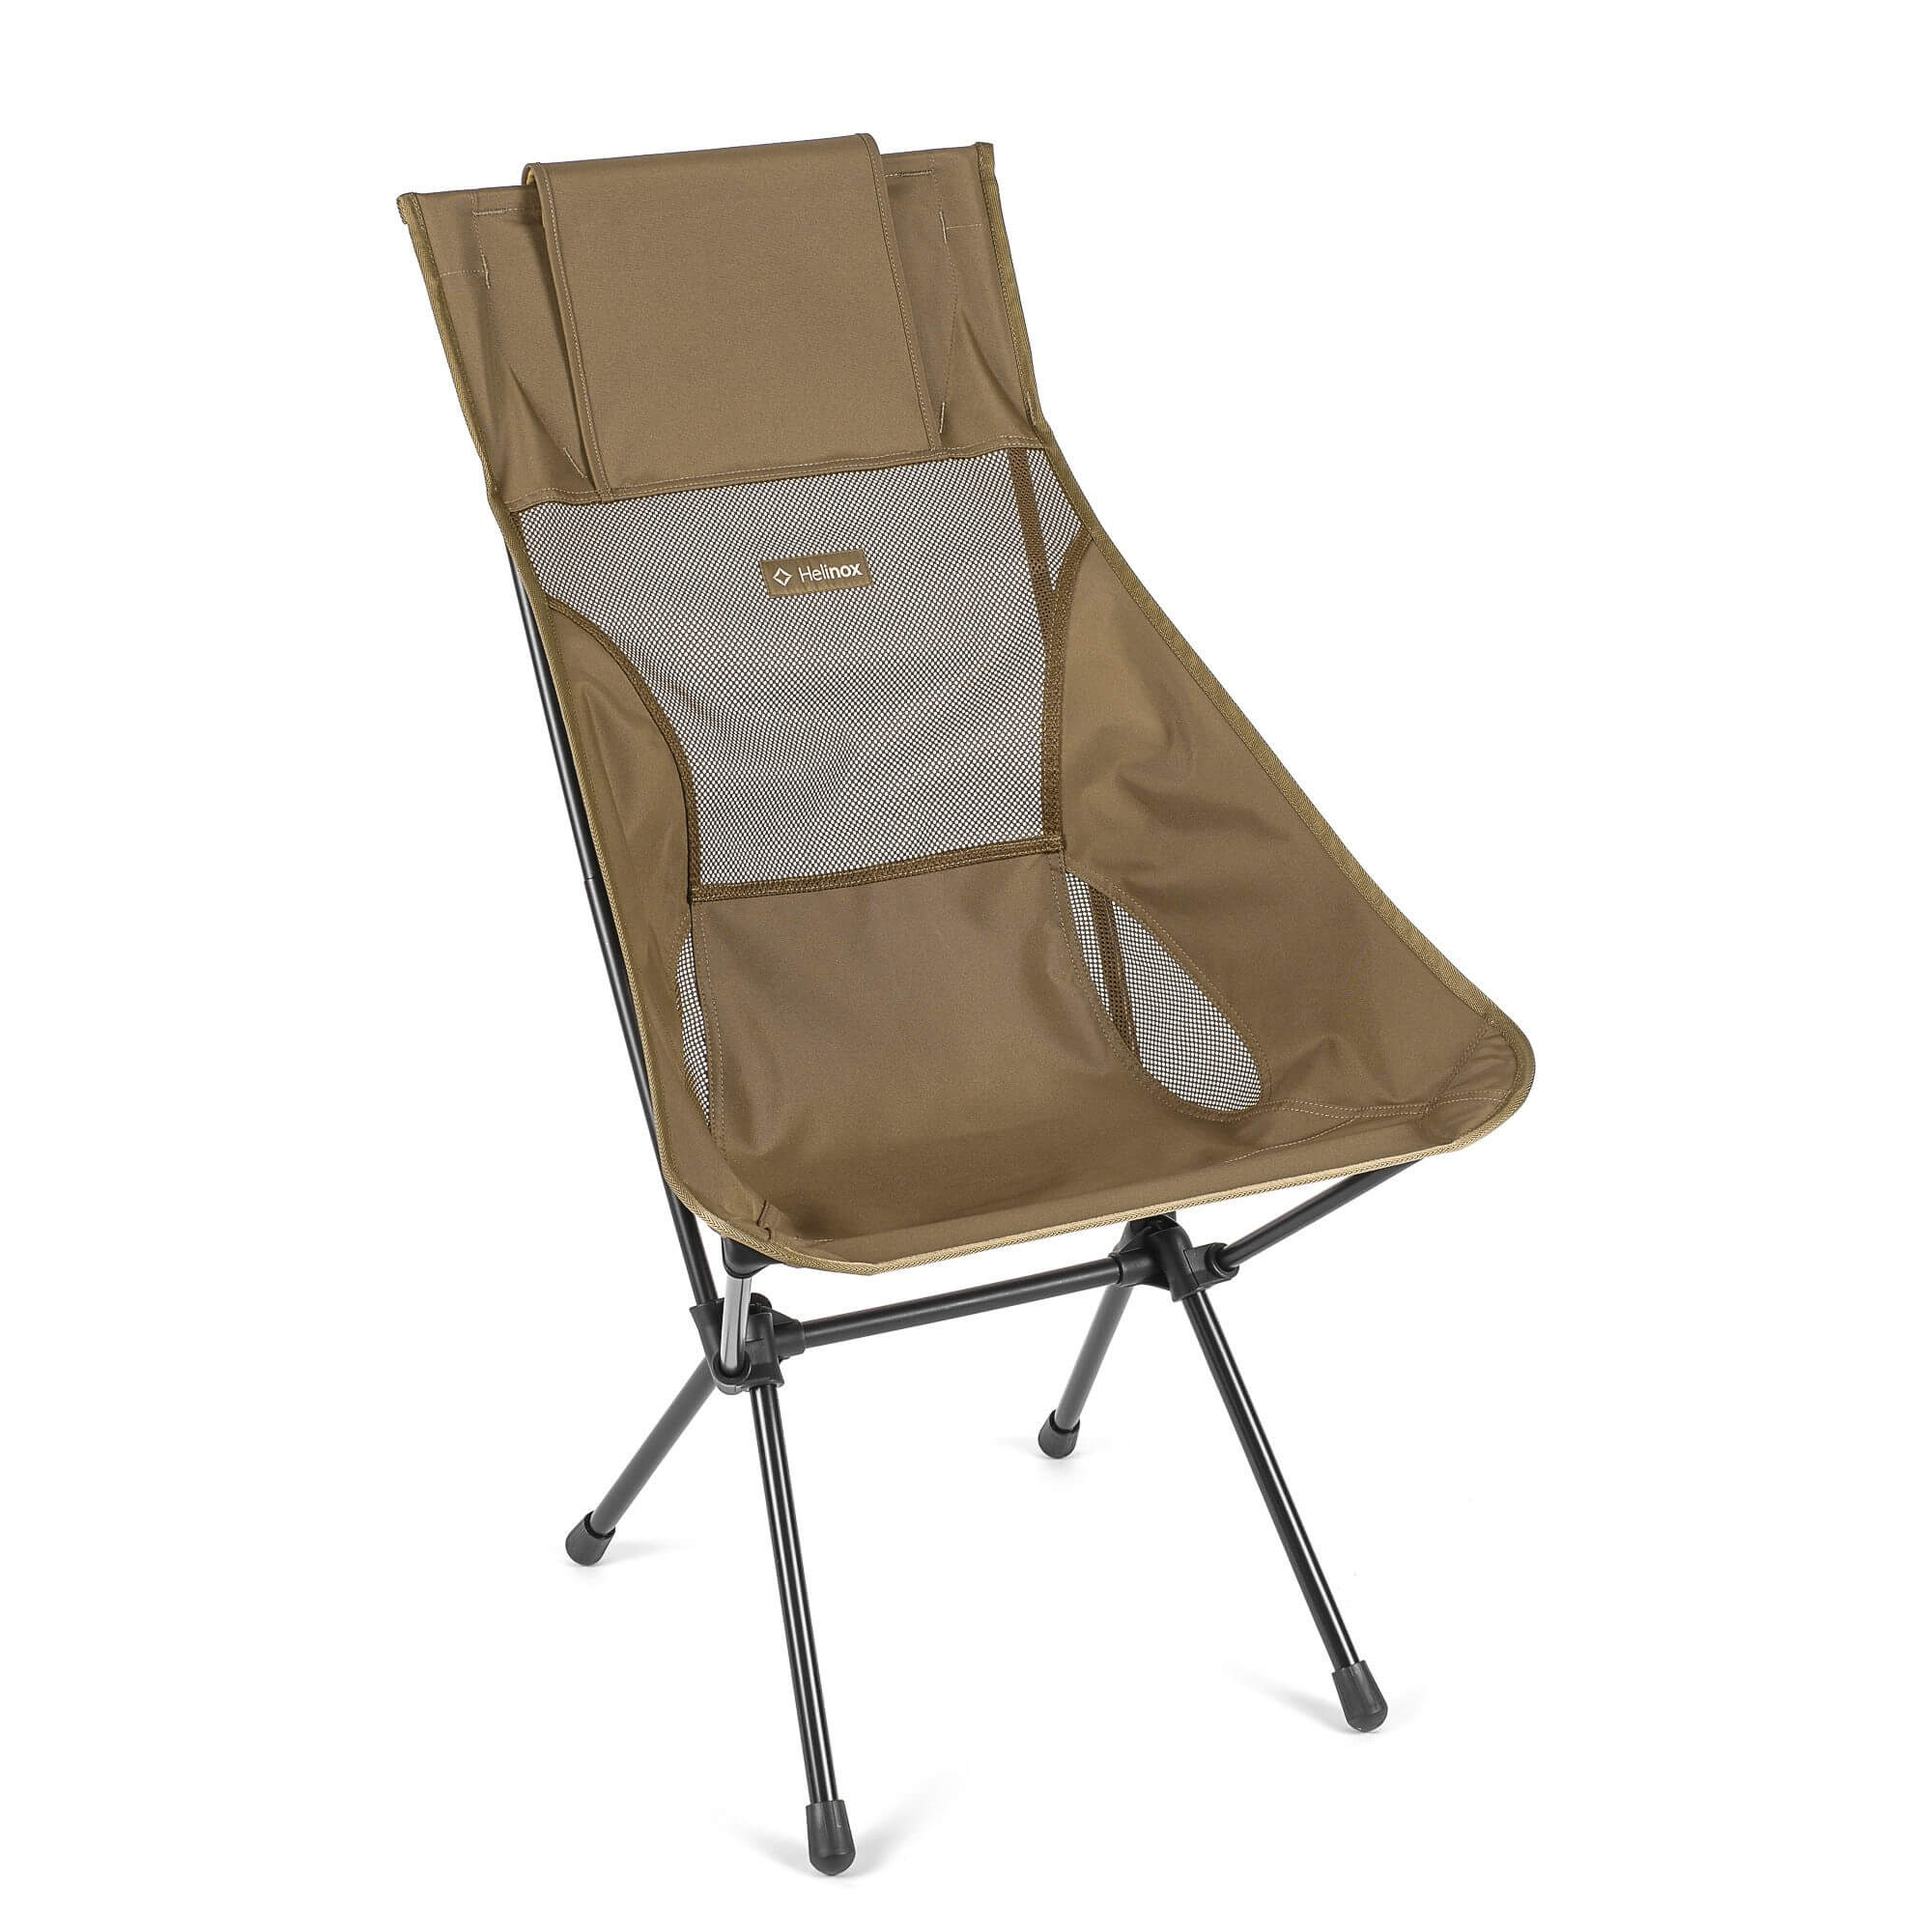 送料込みですfragment design Helinox Tac Sunset Chair